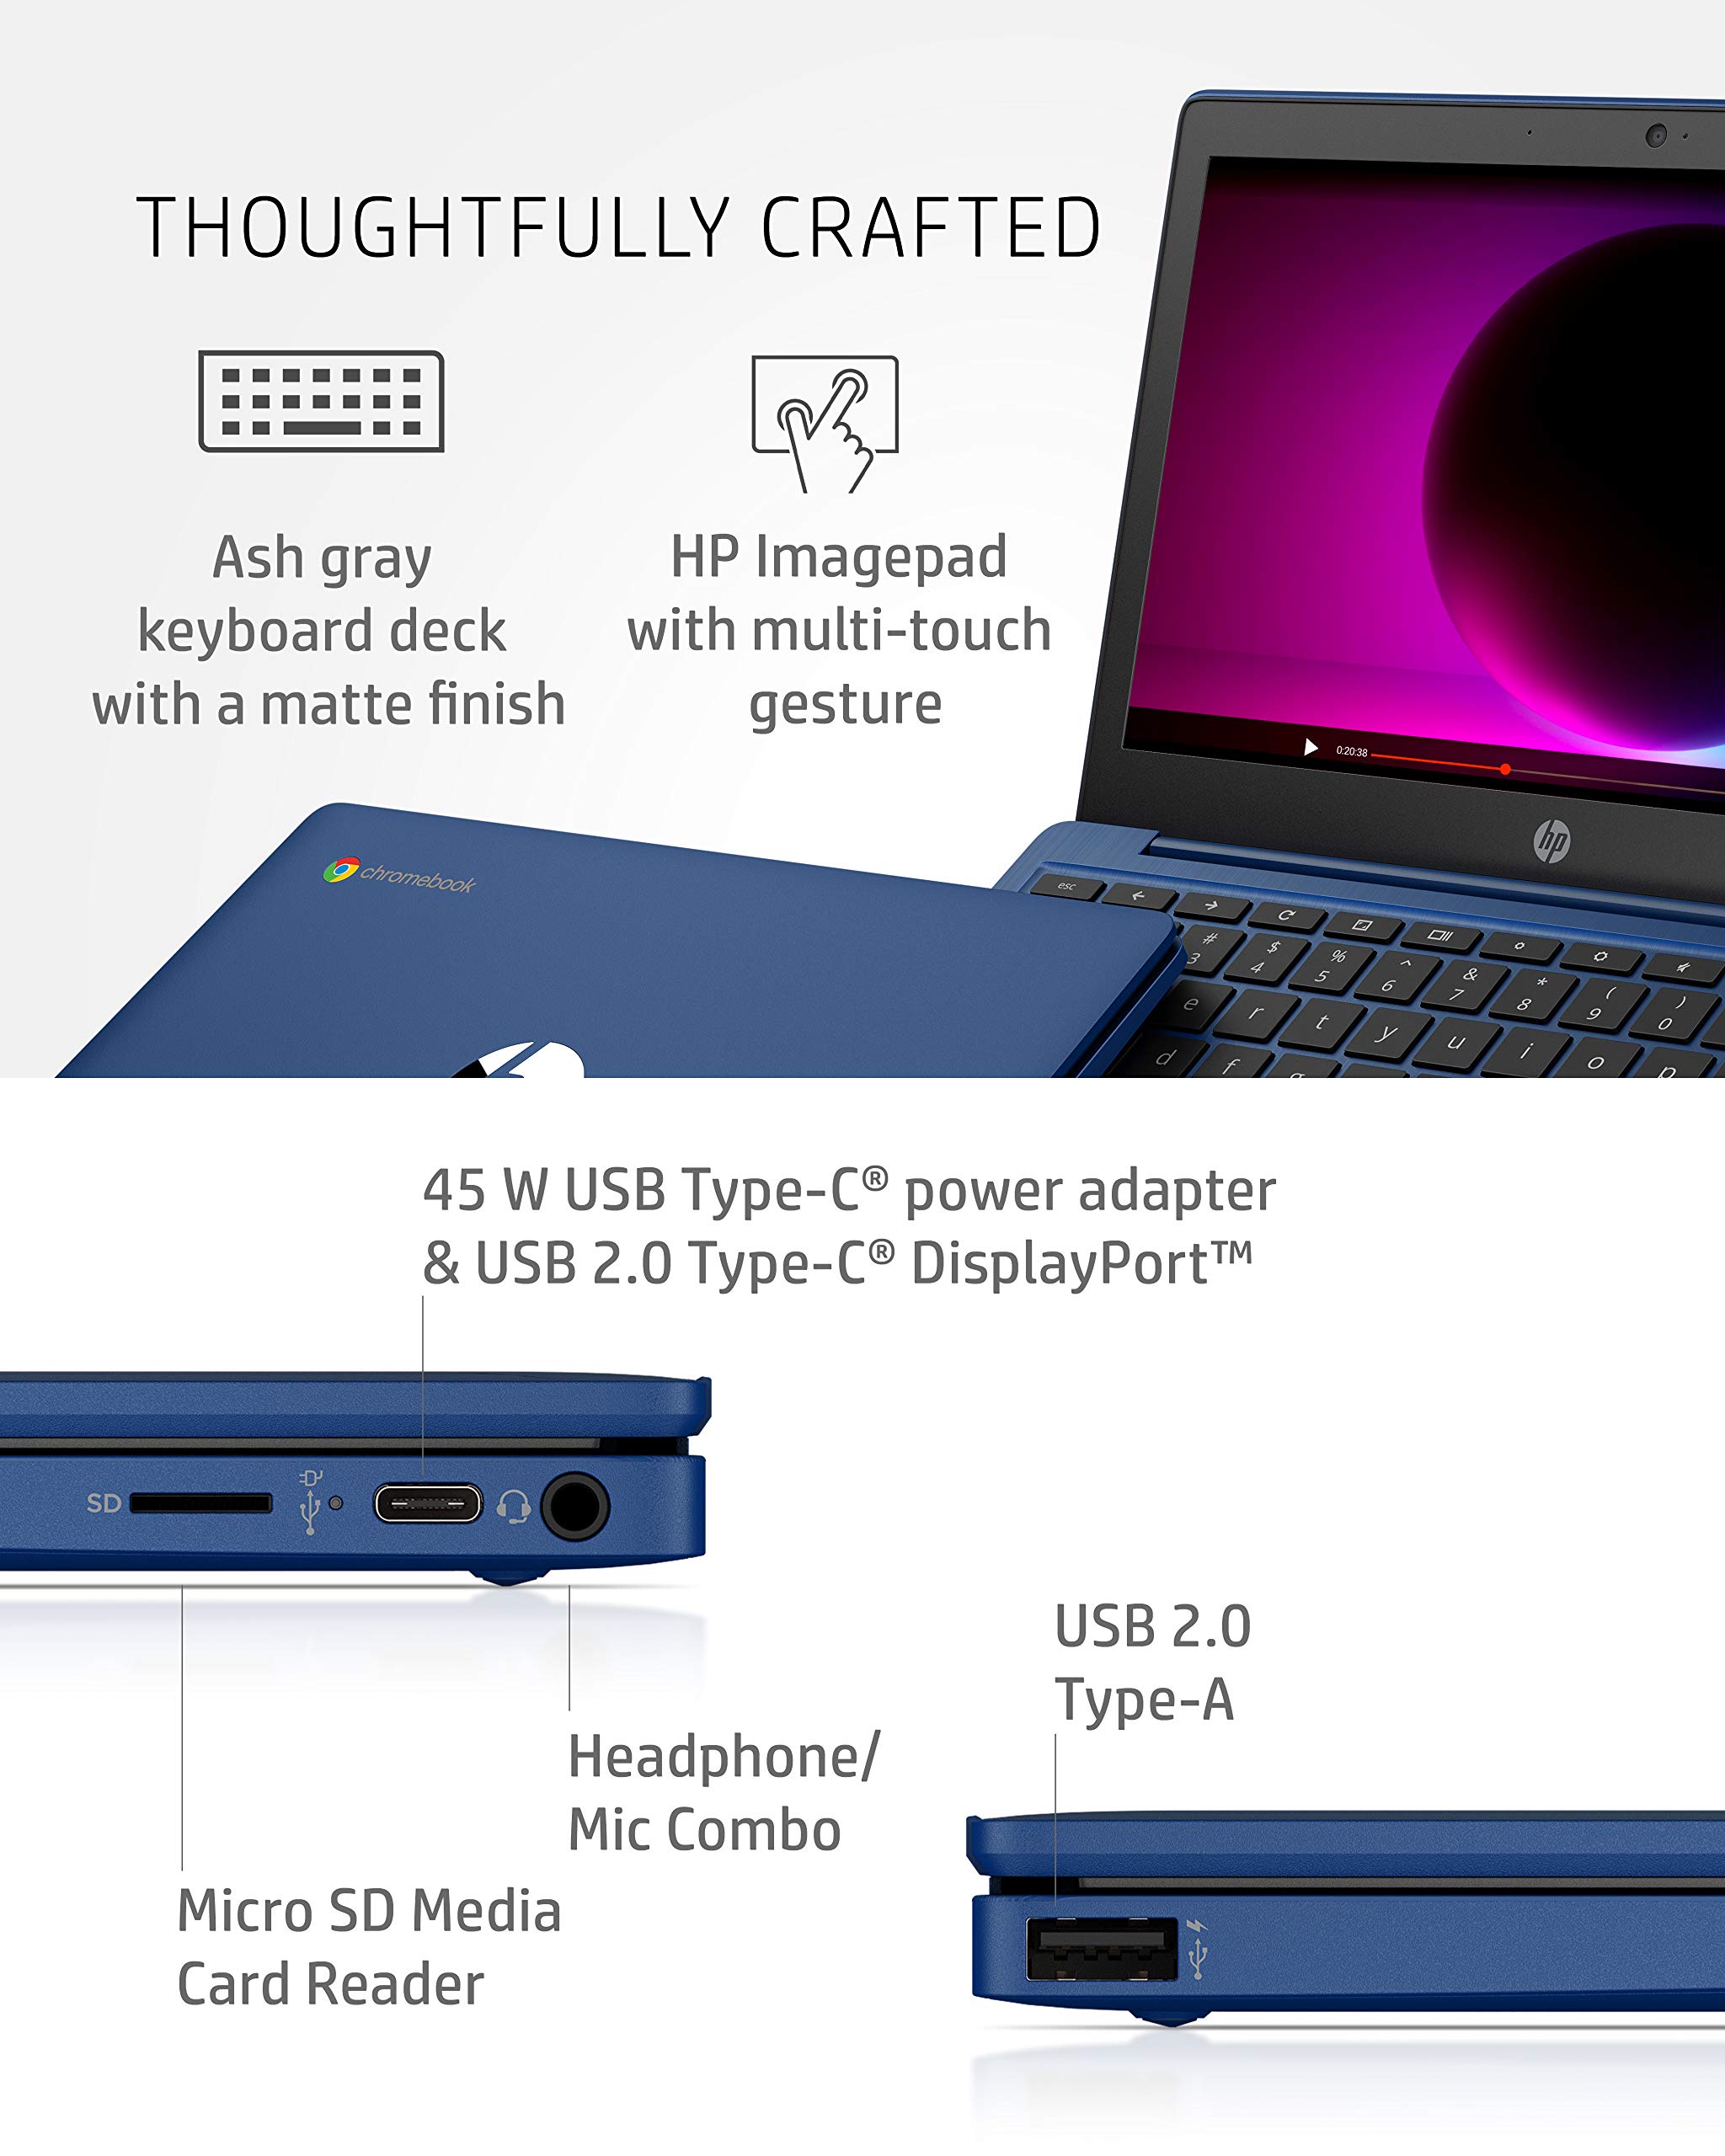 HP Chromebook 11-inch Laptop - MediaTek - MT8183 - 4 GB RAM - 32 GB eMMC Storage - 11.6-inch HD Display - with Chrome OS™ - (11a-na0030nr, 2020 model, Indigo Blue)